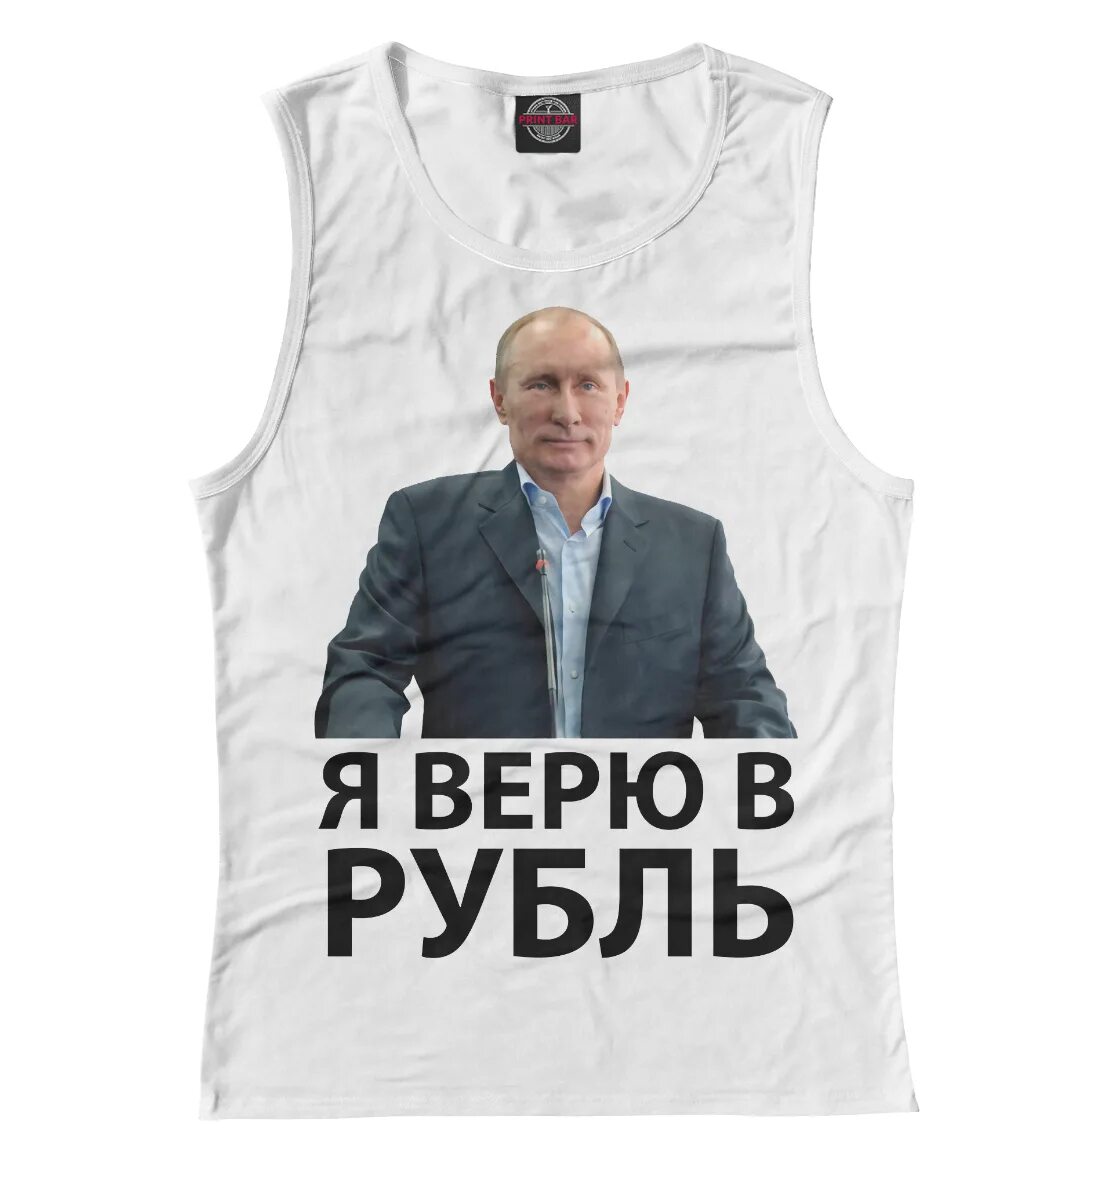 Футболка рубль. Футболка с Путиным верю в рубль. Я верю в рубль. Во что я верю.